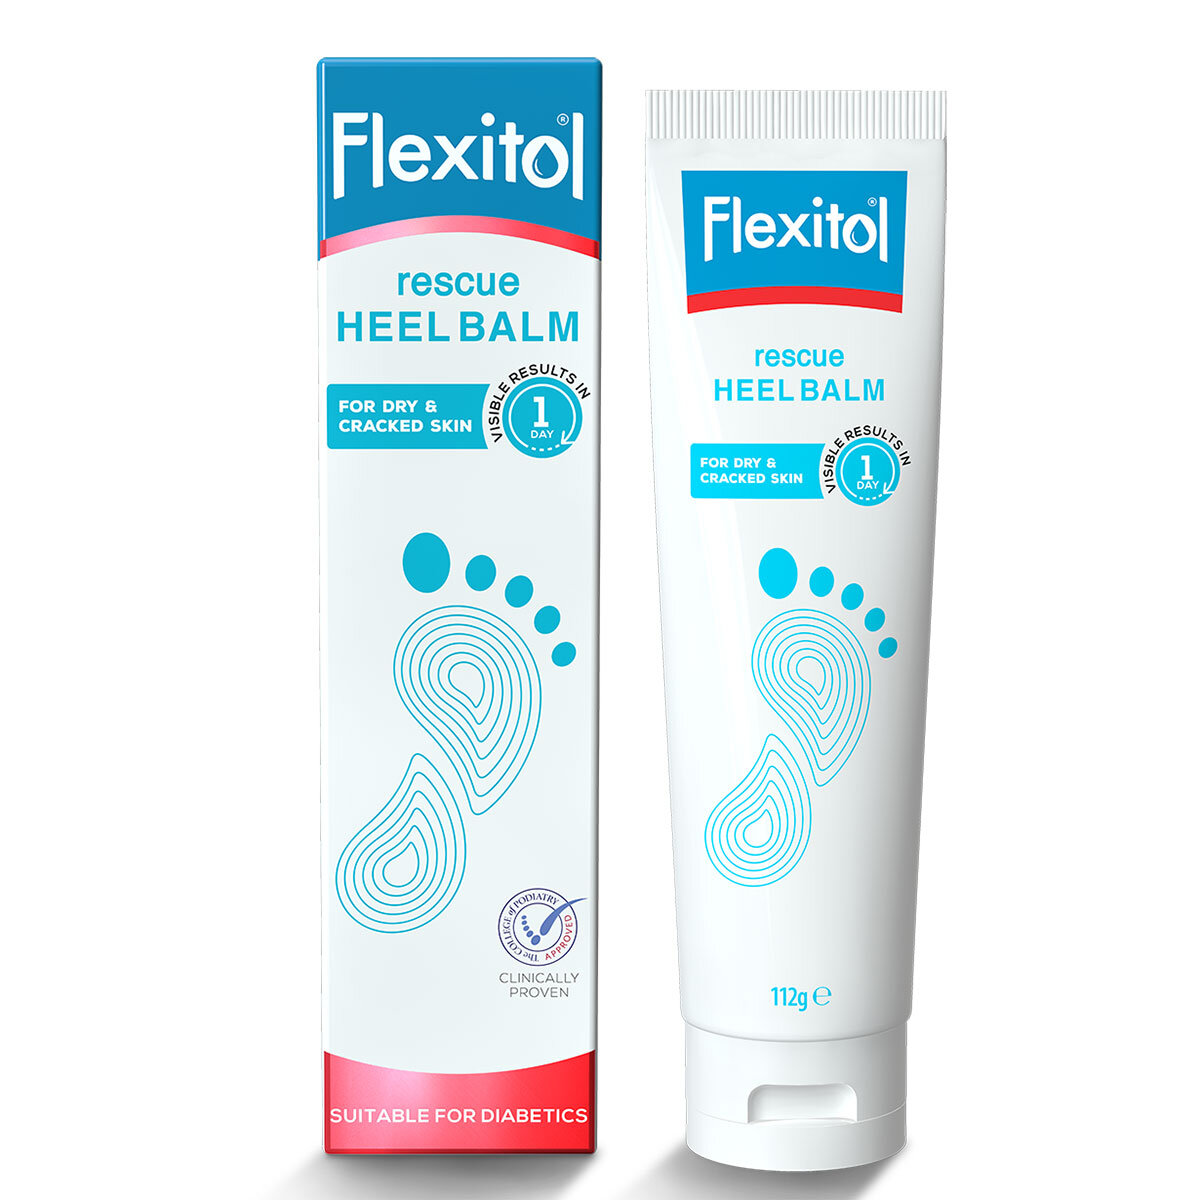 Flexitol Rescue Heel Balm, 112g